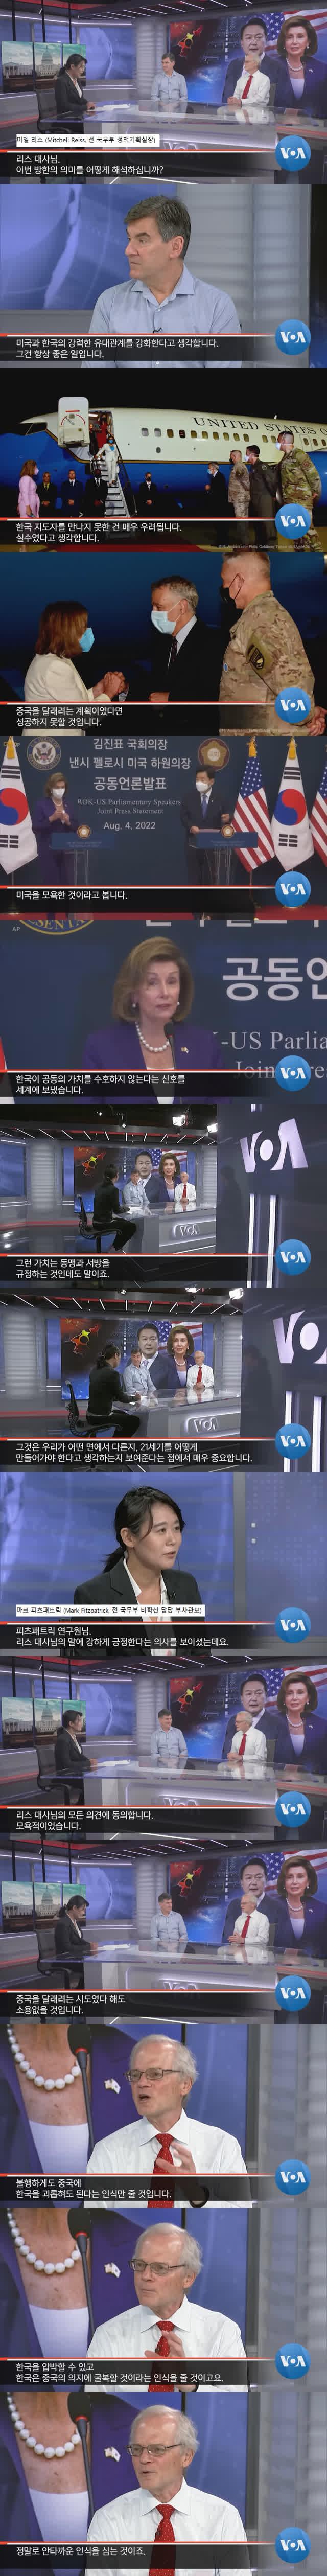 윤석열 펠로시 패싱-voa(미국정부국영라디오방송) 한국이 미국을 모욕했다.jpg